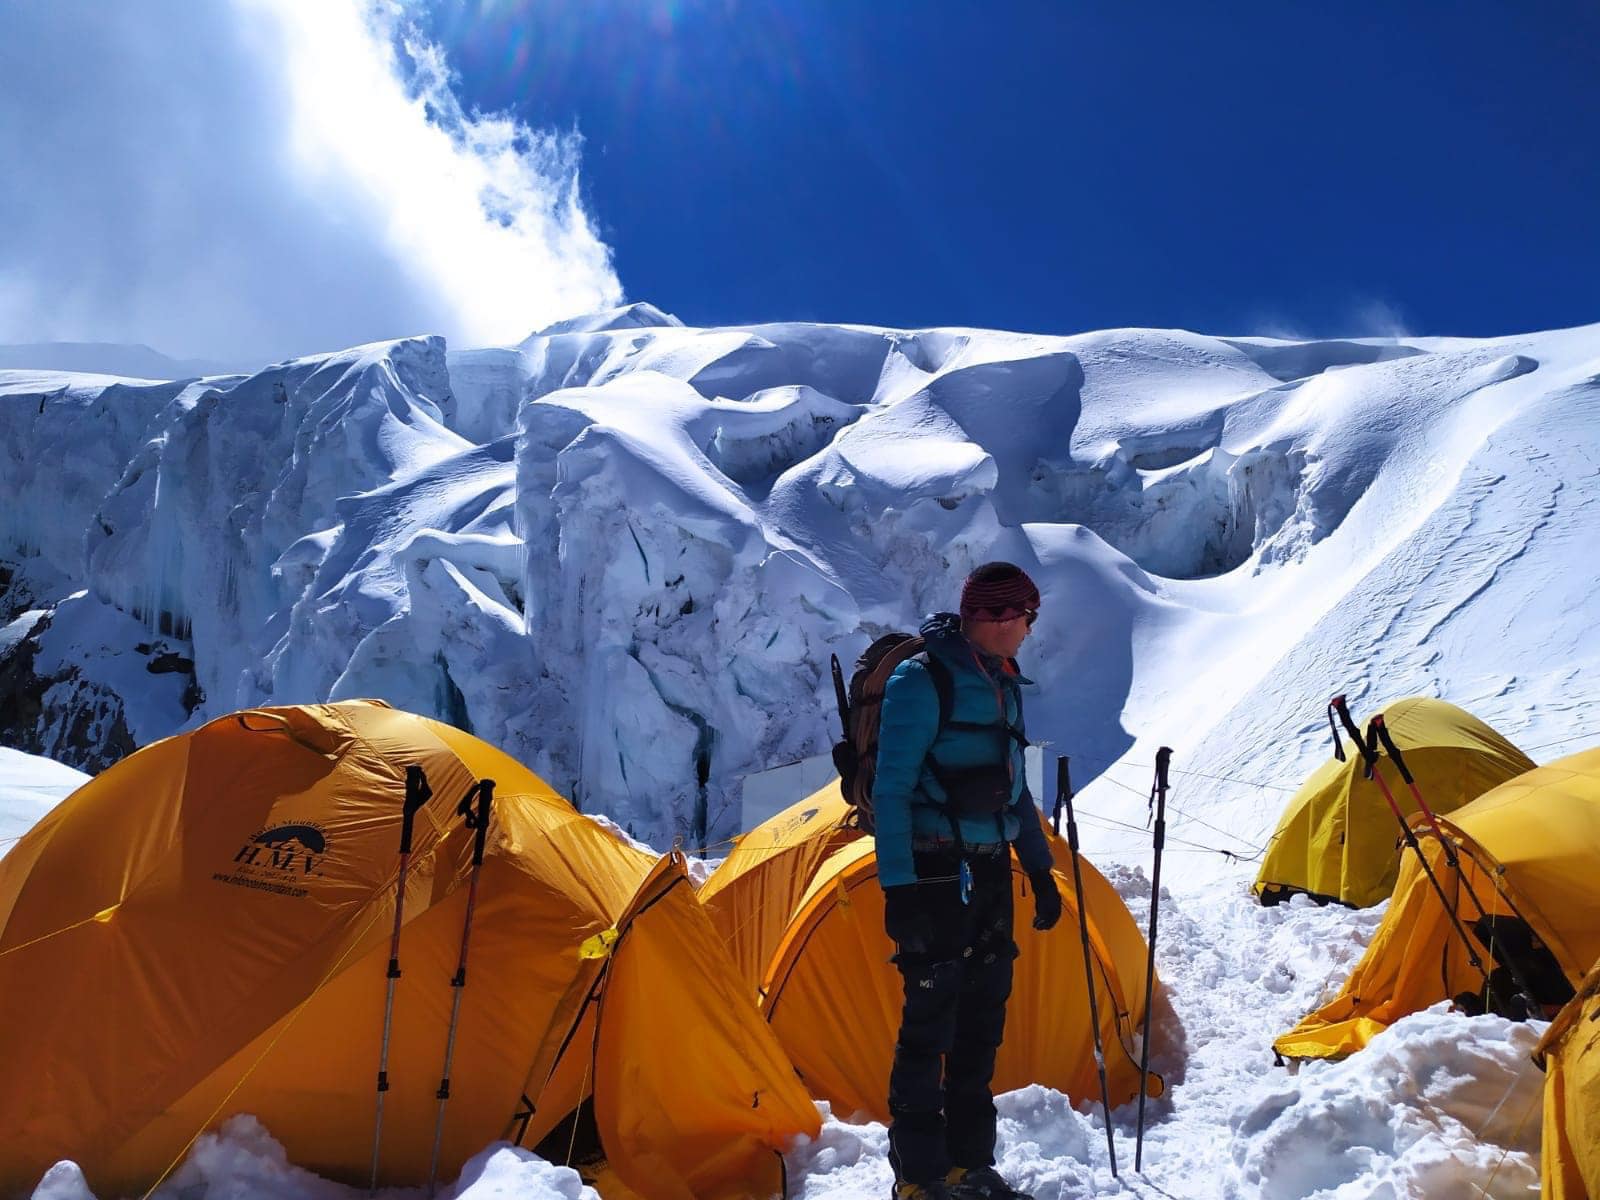 Trekking Peaks in Nepal